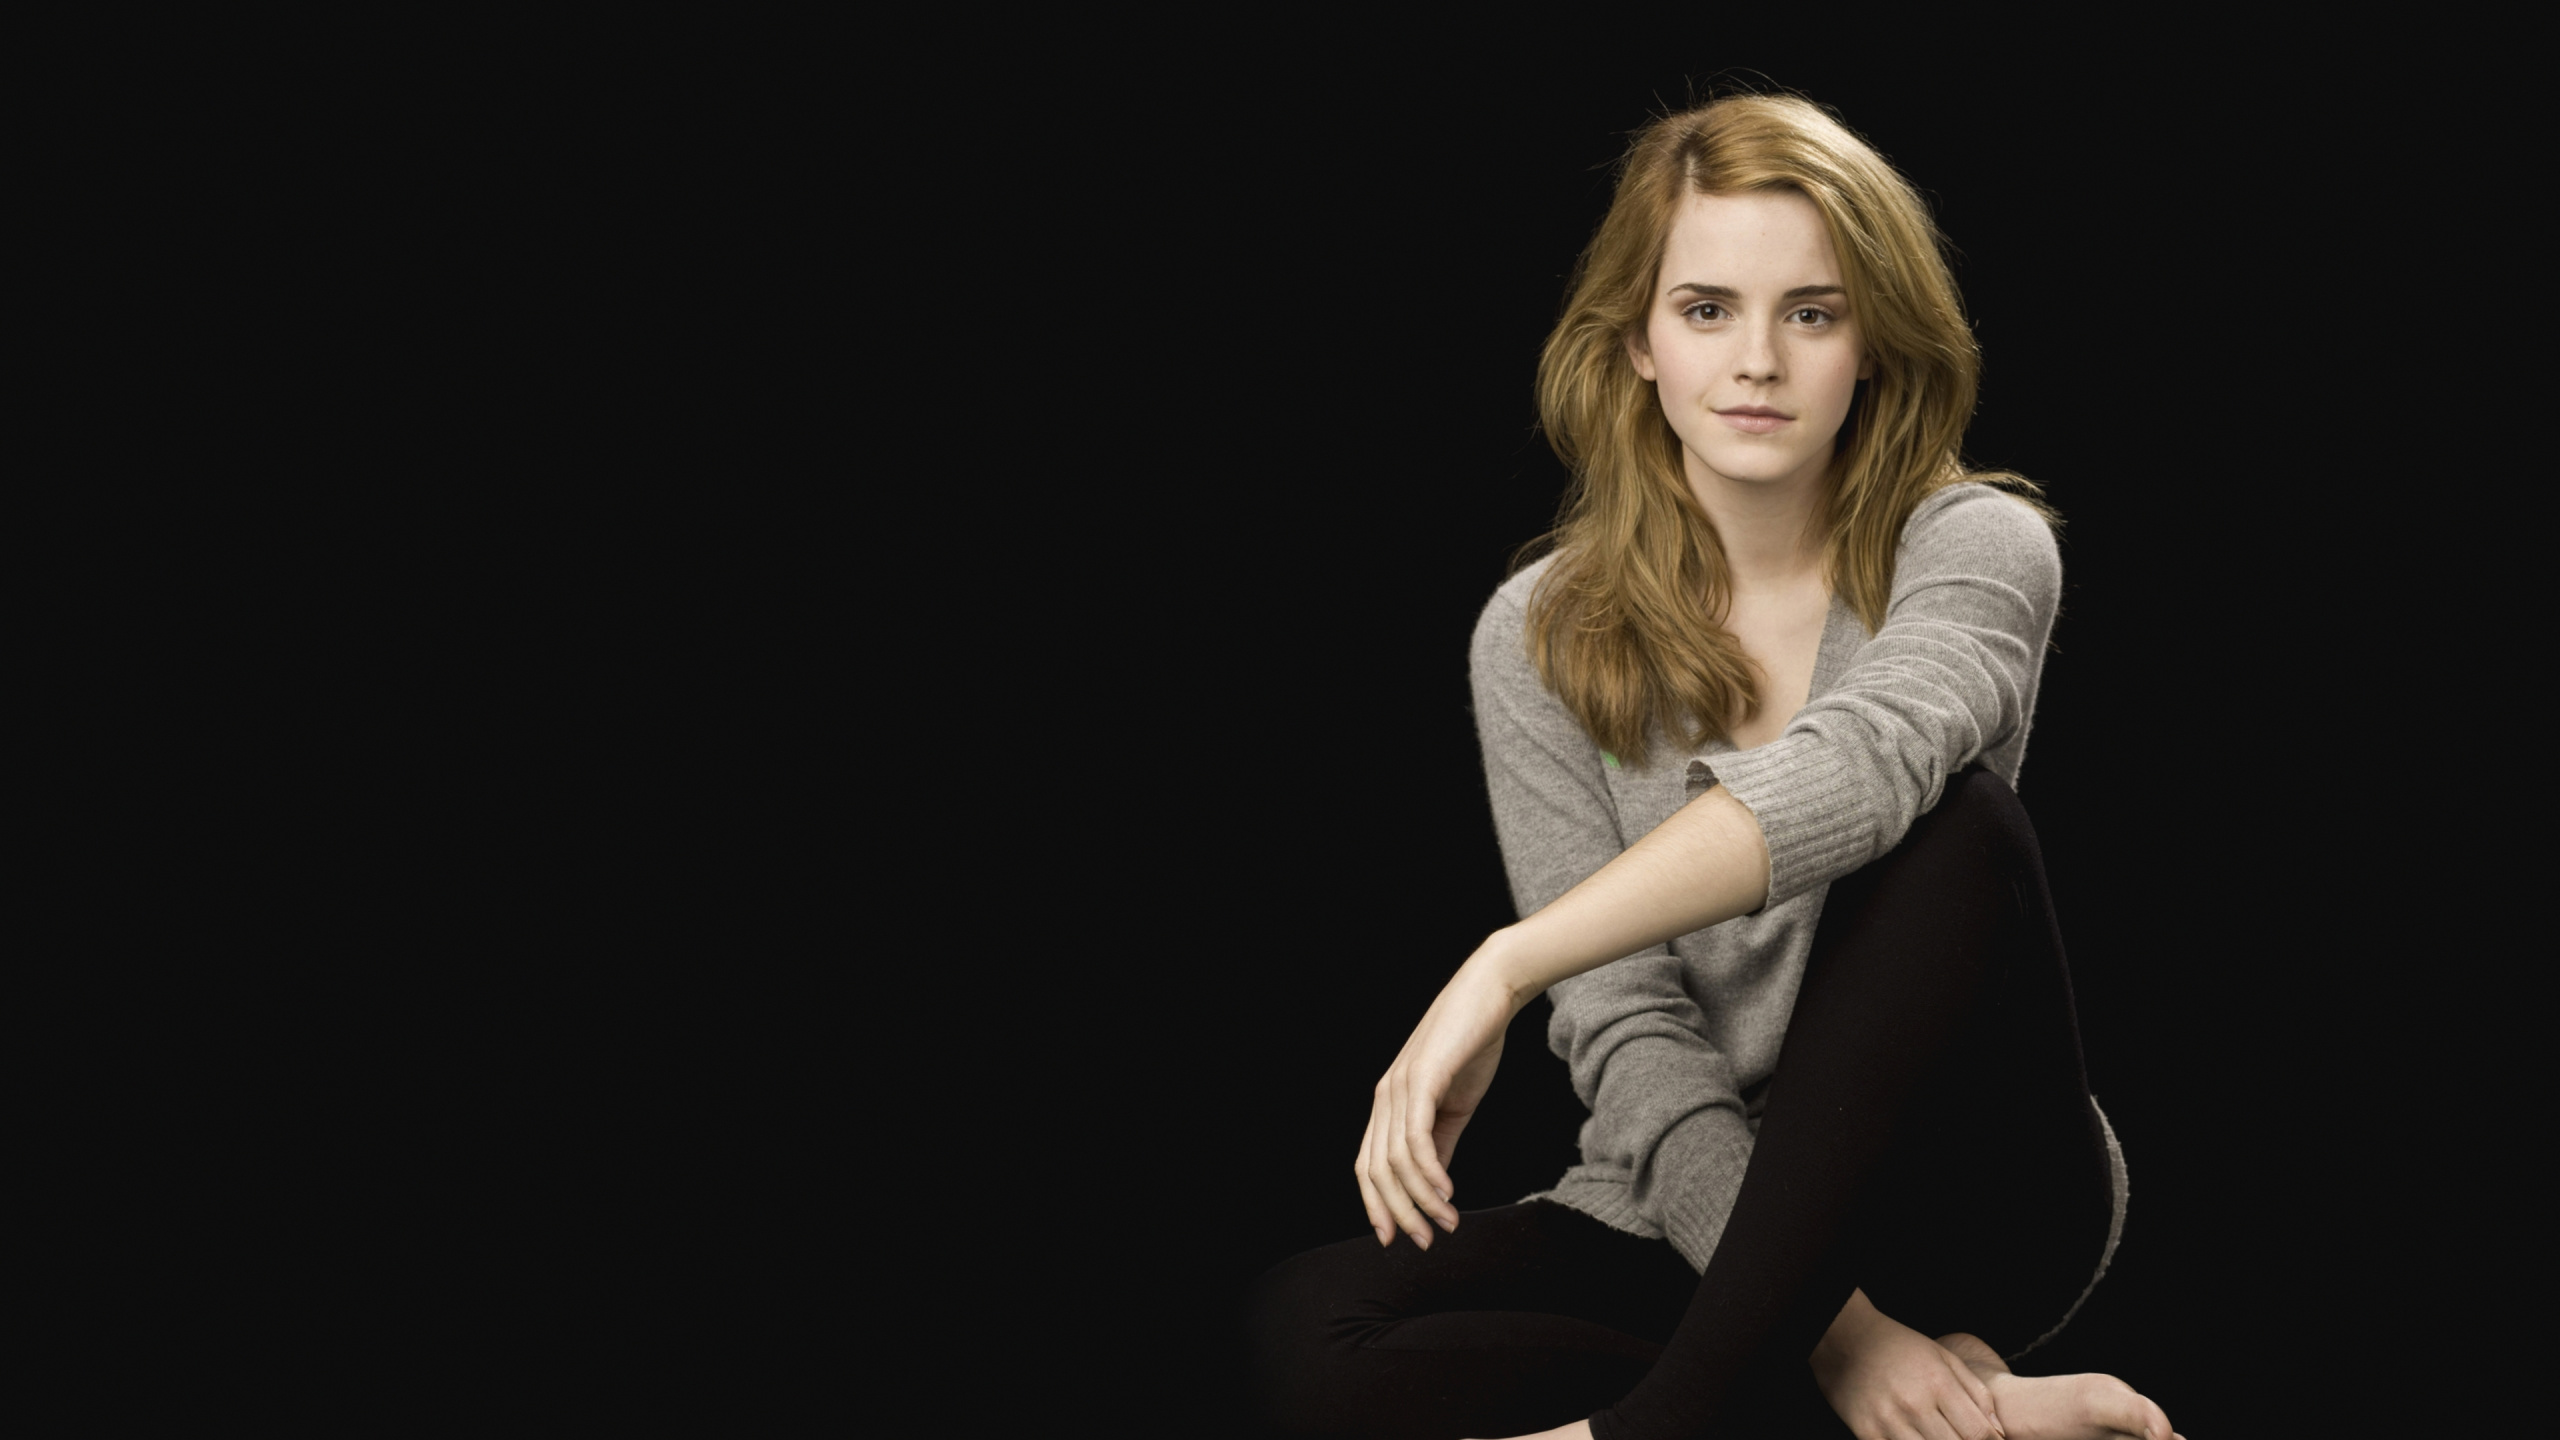 Emma Watson, Actor, Sesión, Reino Unido, Cuerpo Humano. Wallpaper in 2560x1440 Resolution